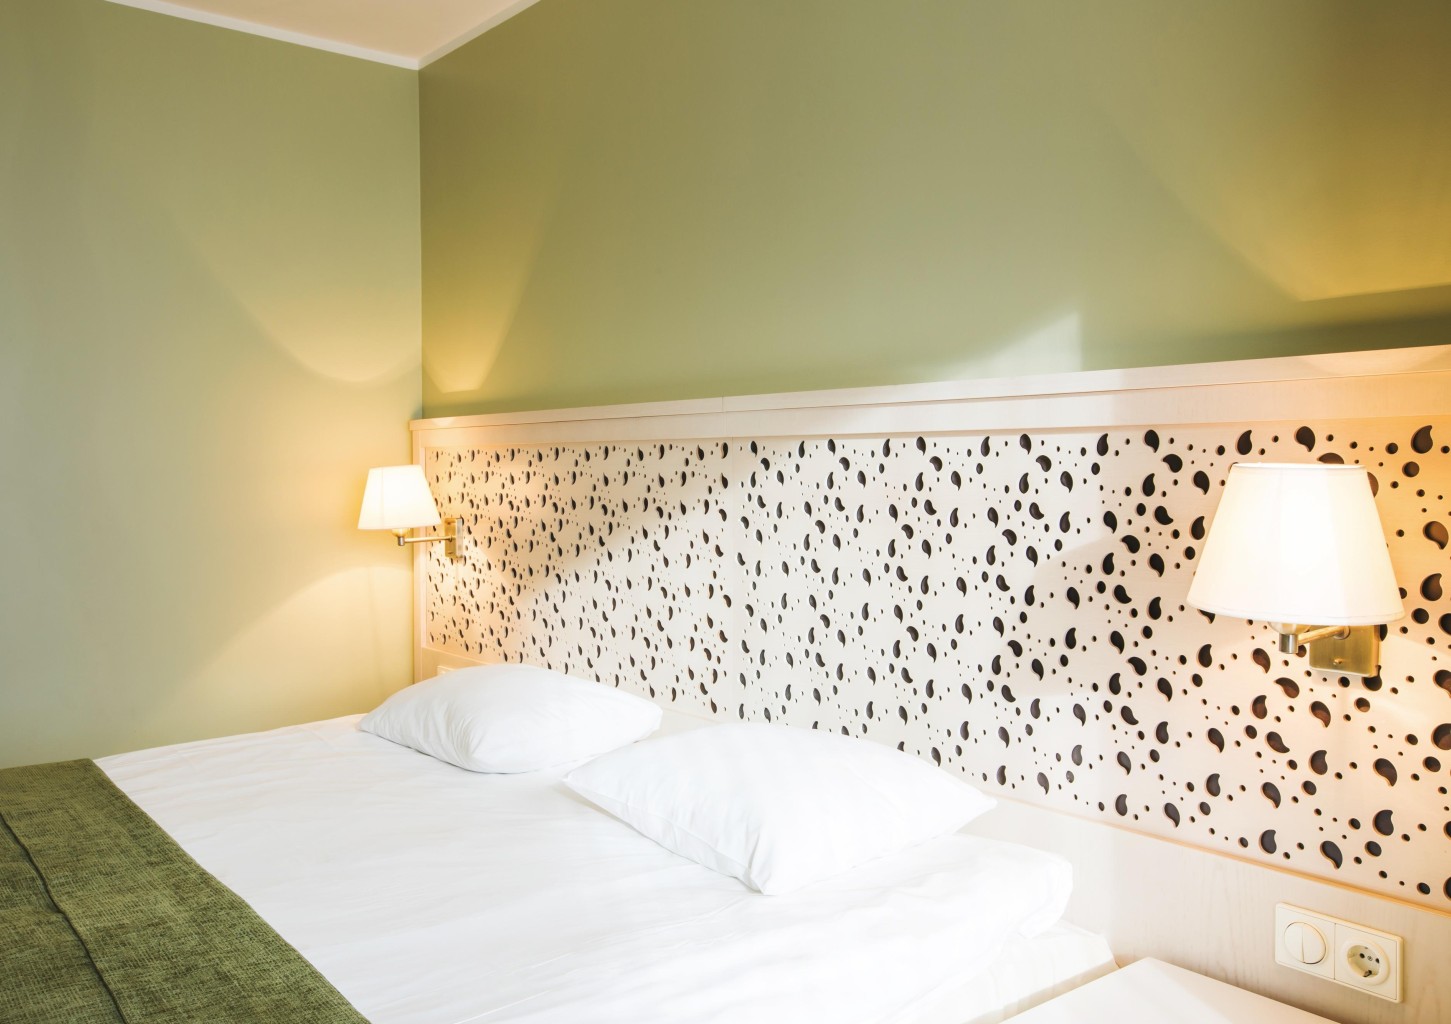 Kesäkauden majoituspaketti Standard-huoneessa kahdelle (1 yö) - Hotel Jurmala Spa | Latvia